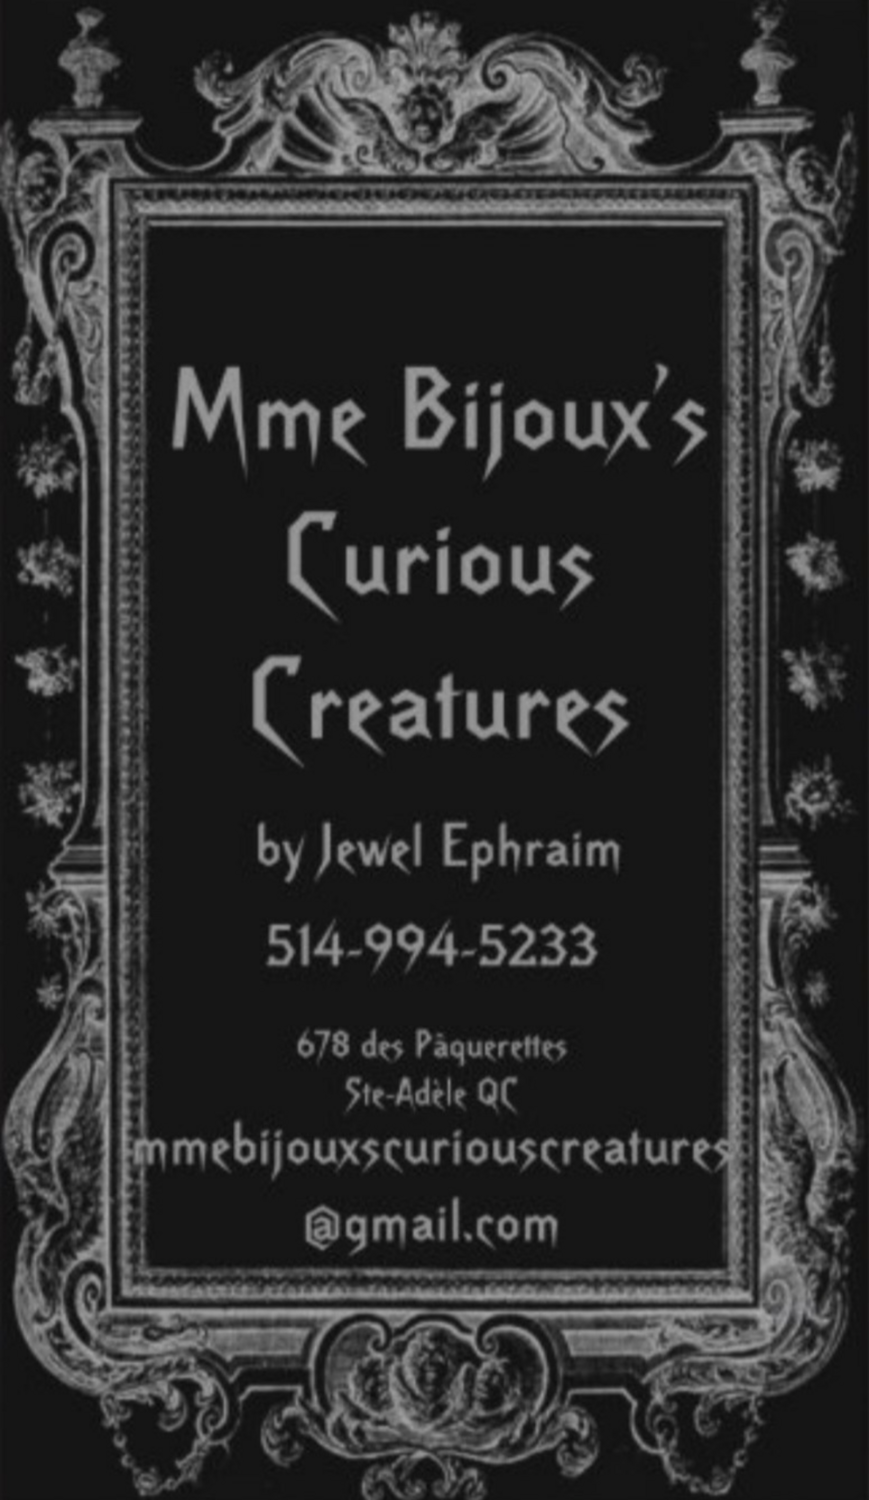 Mme bijoux's Curious Creatures